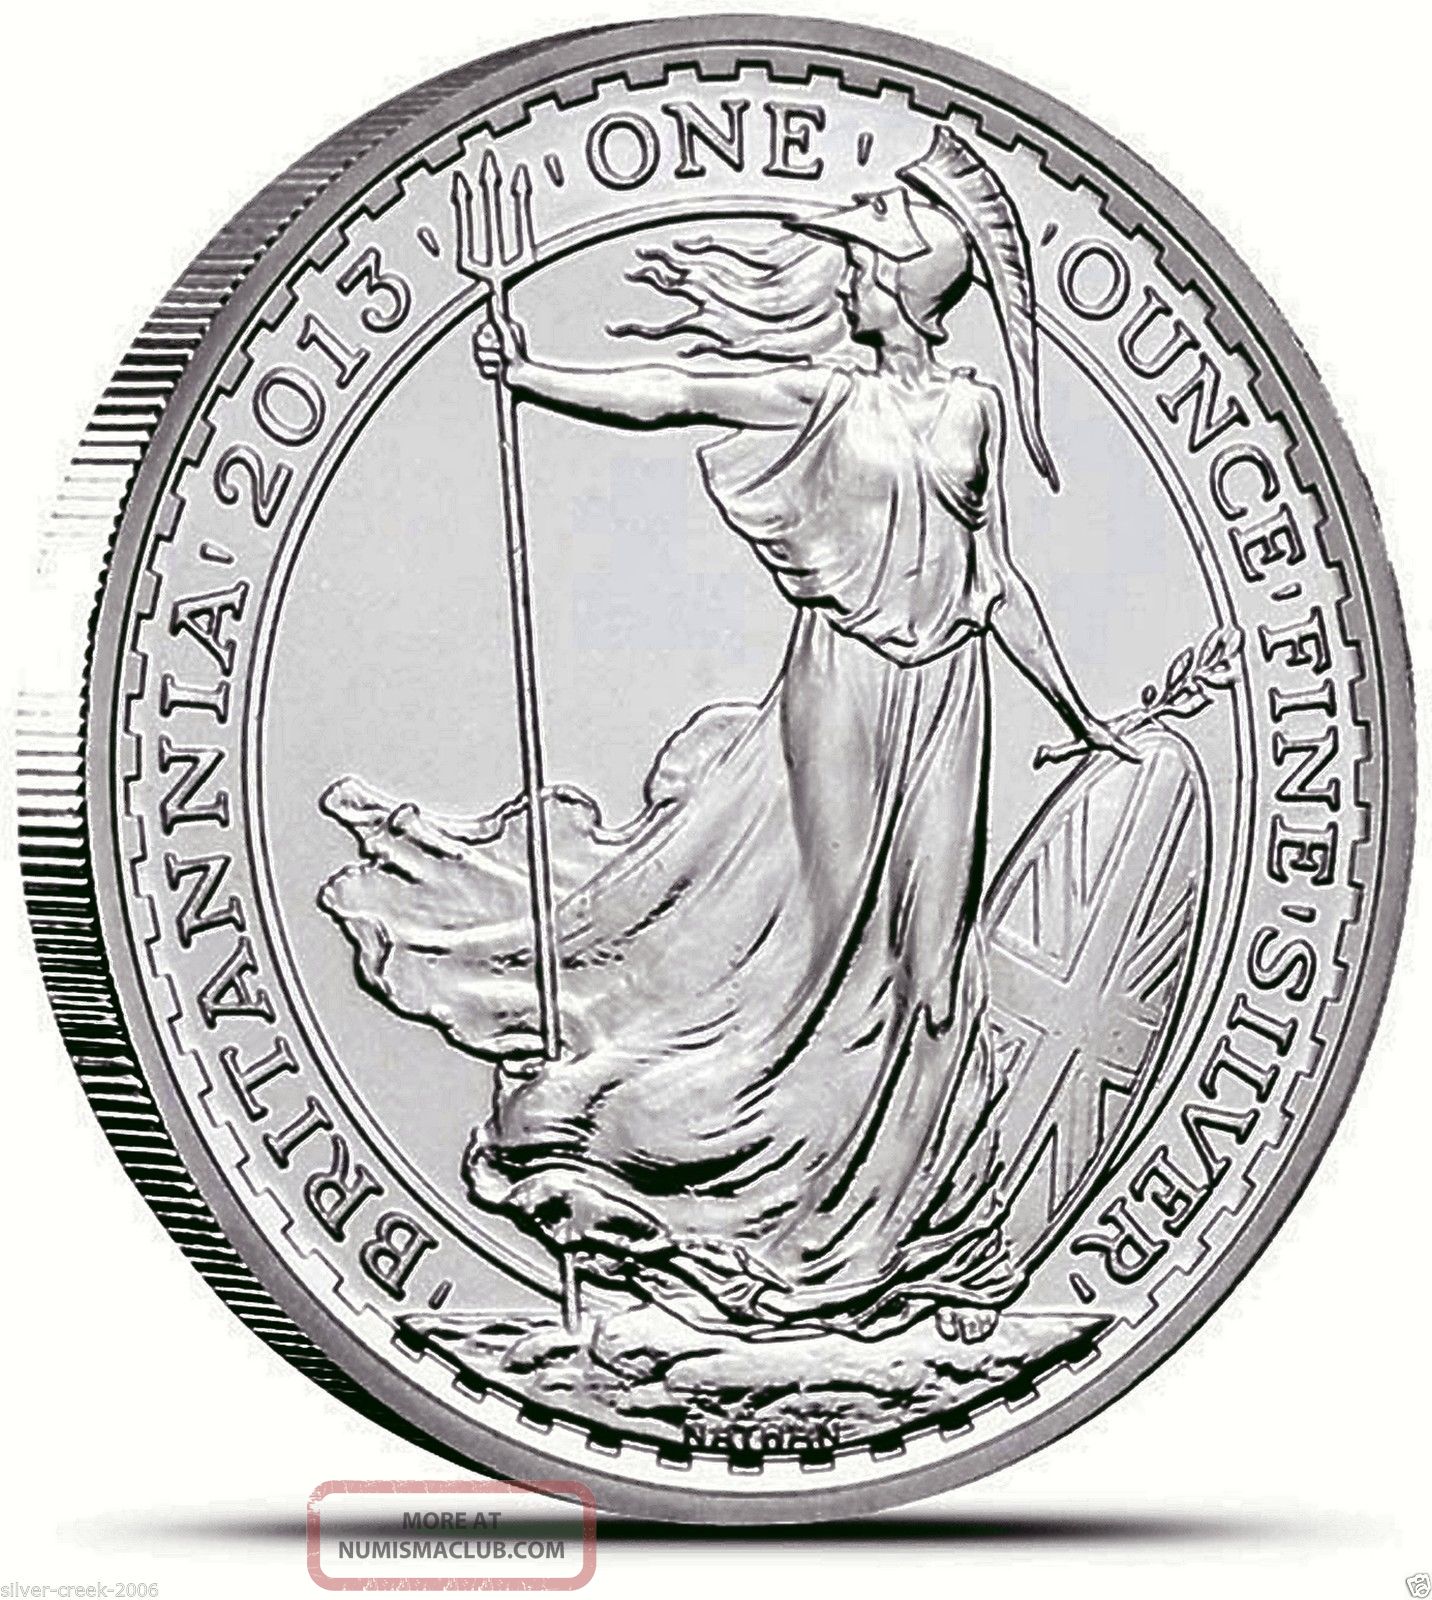 2013 - 1 Oz Britannia £2 Brilliant Uncirculated. 999 Pure Silver Coin